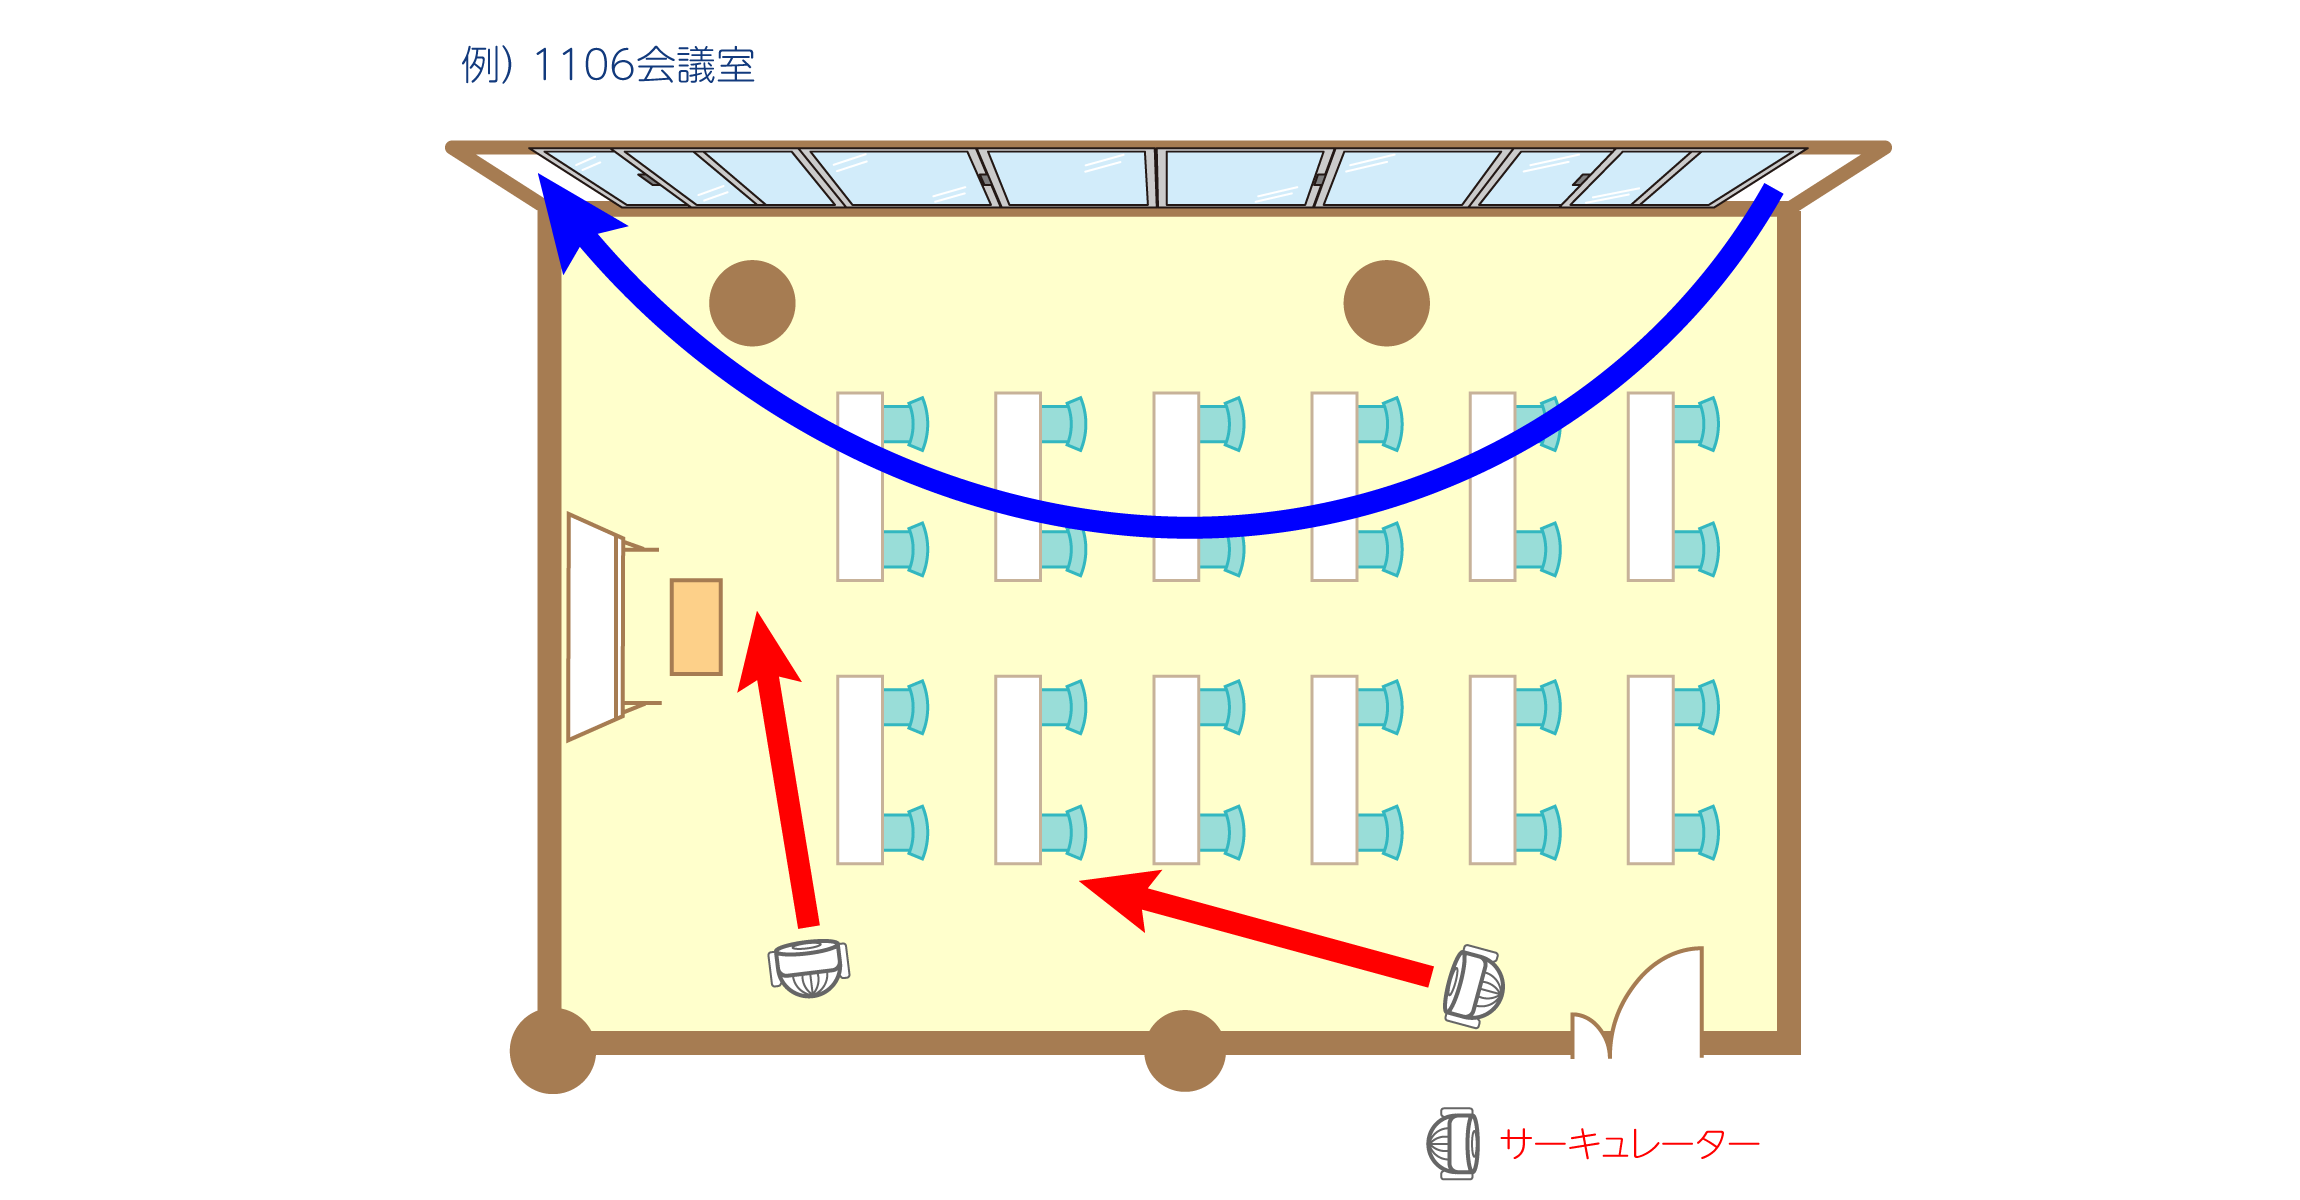 コロナ対策 効果的な換気の方法 渋谷 貸し会議室のフォーラムエイト